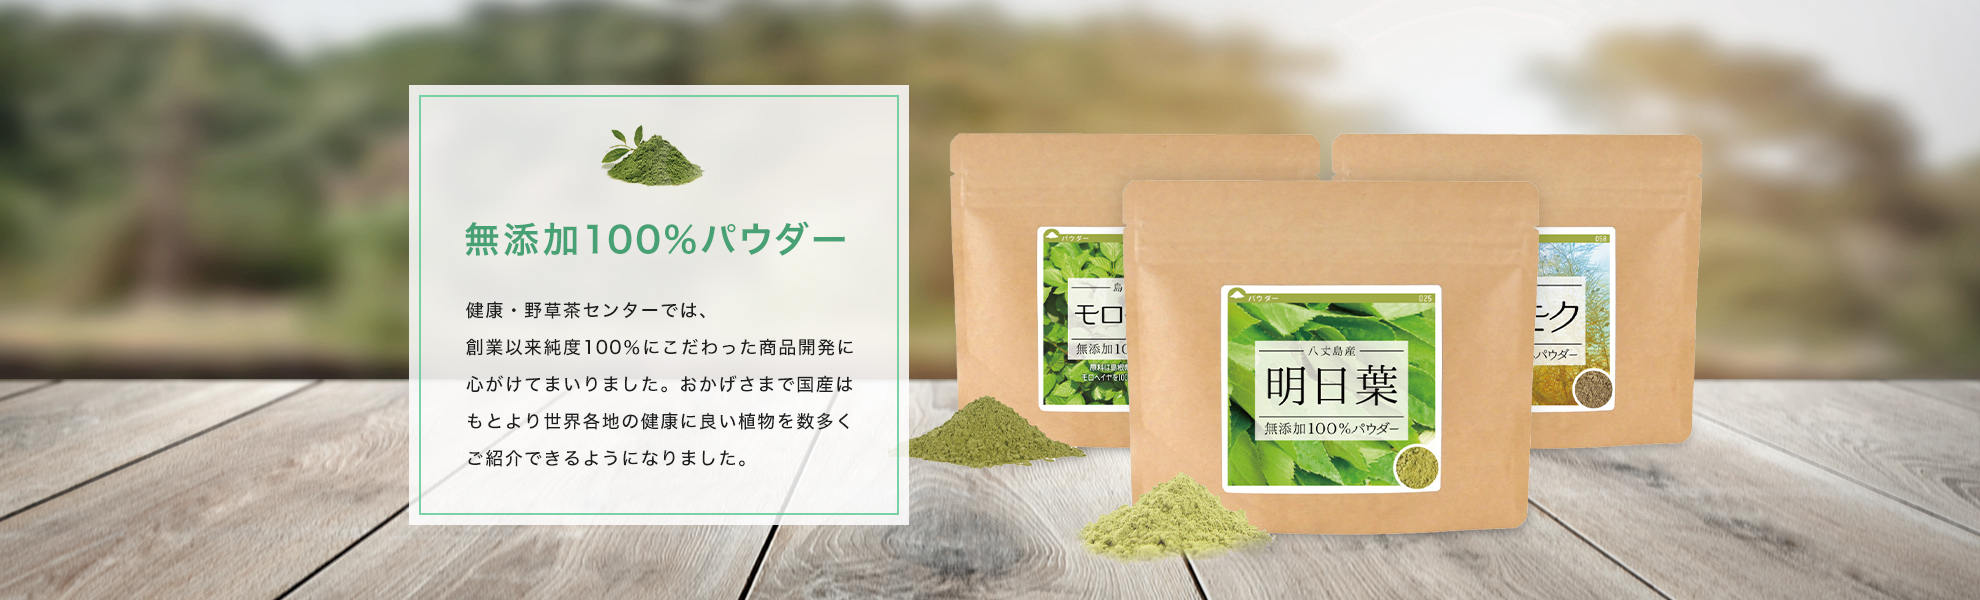 健康・野草茶センター 公式 online shop